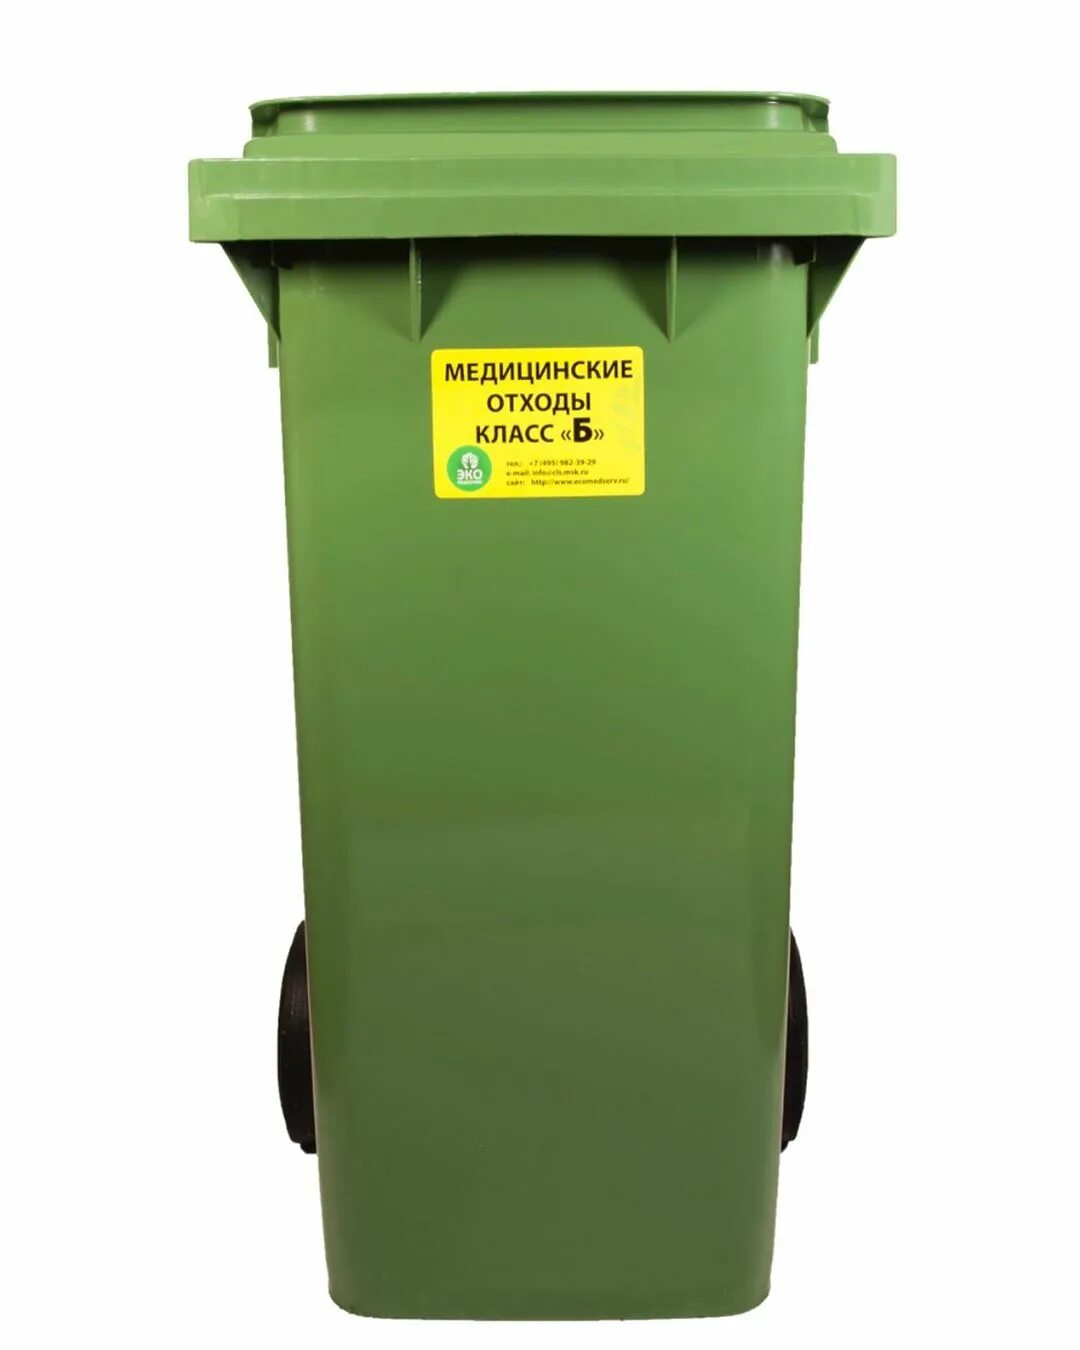 Для сбора отходов используются. Бак для отходов ЦР15.189.00.000. Контейнеры для медицинских отходов.